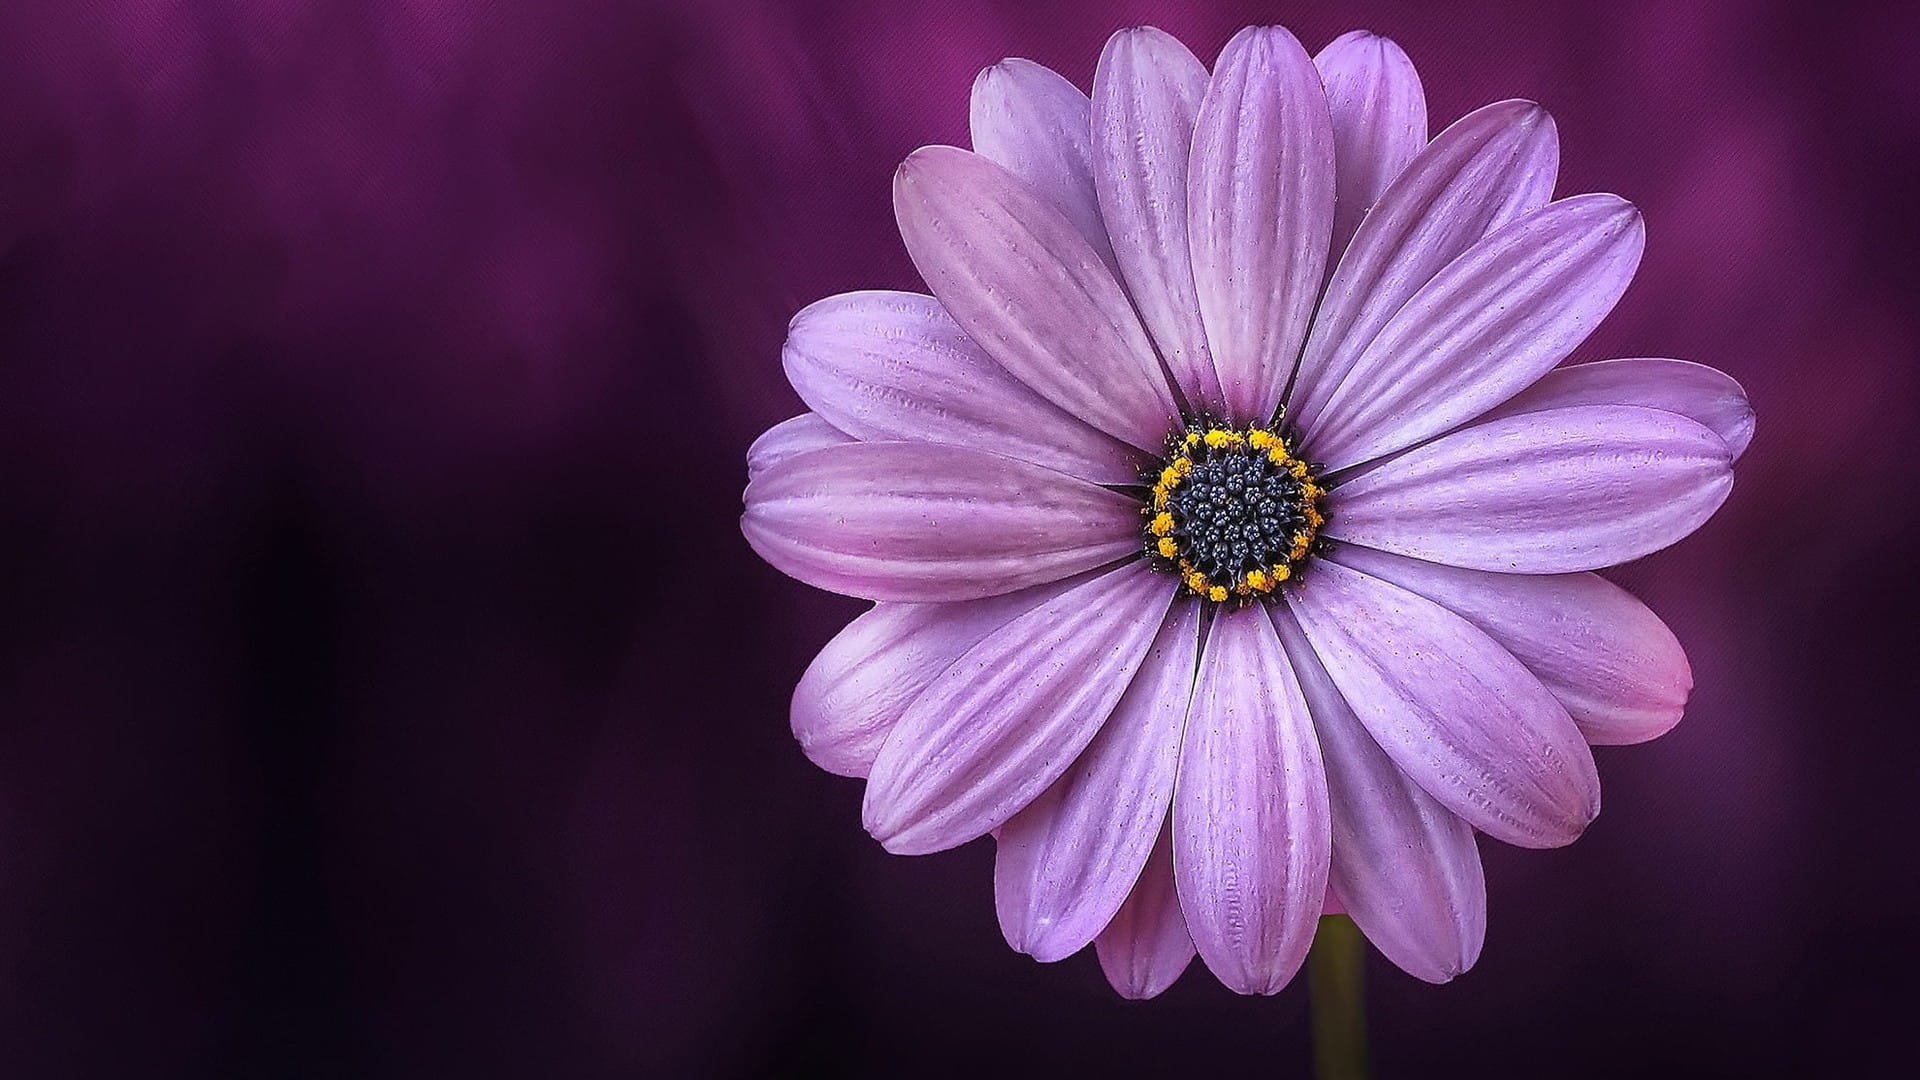 野外小清新的紫色小花近距离拍摄高清桌面壁纸